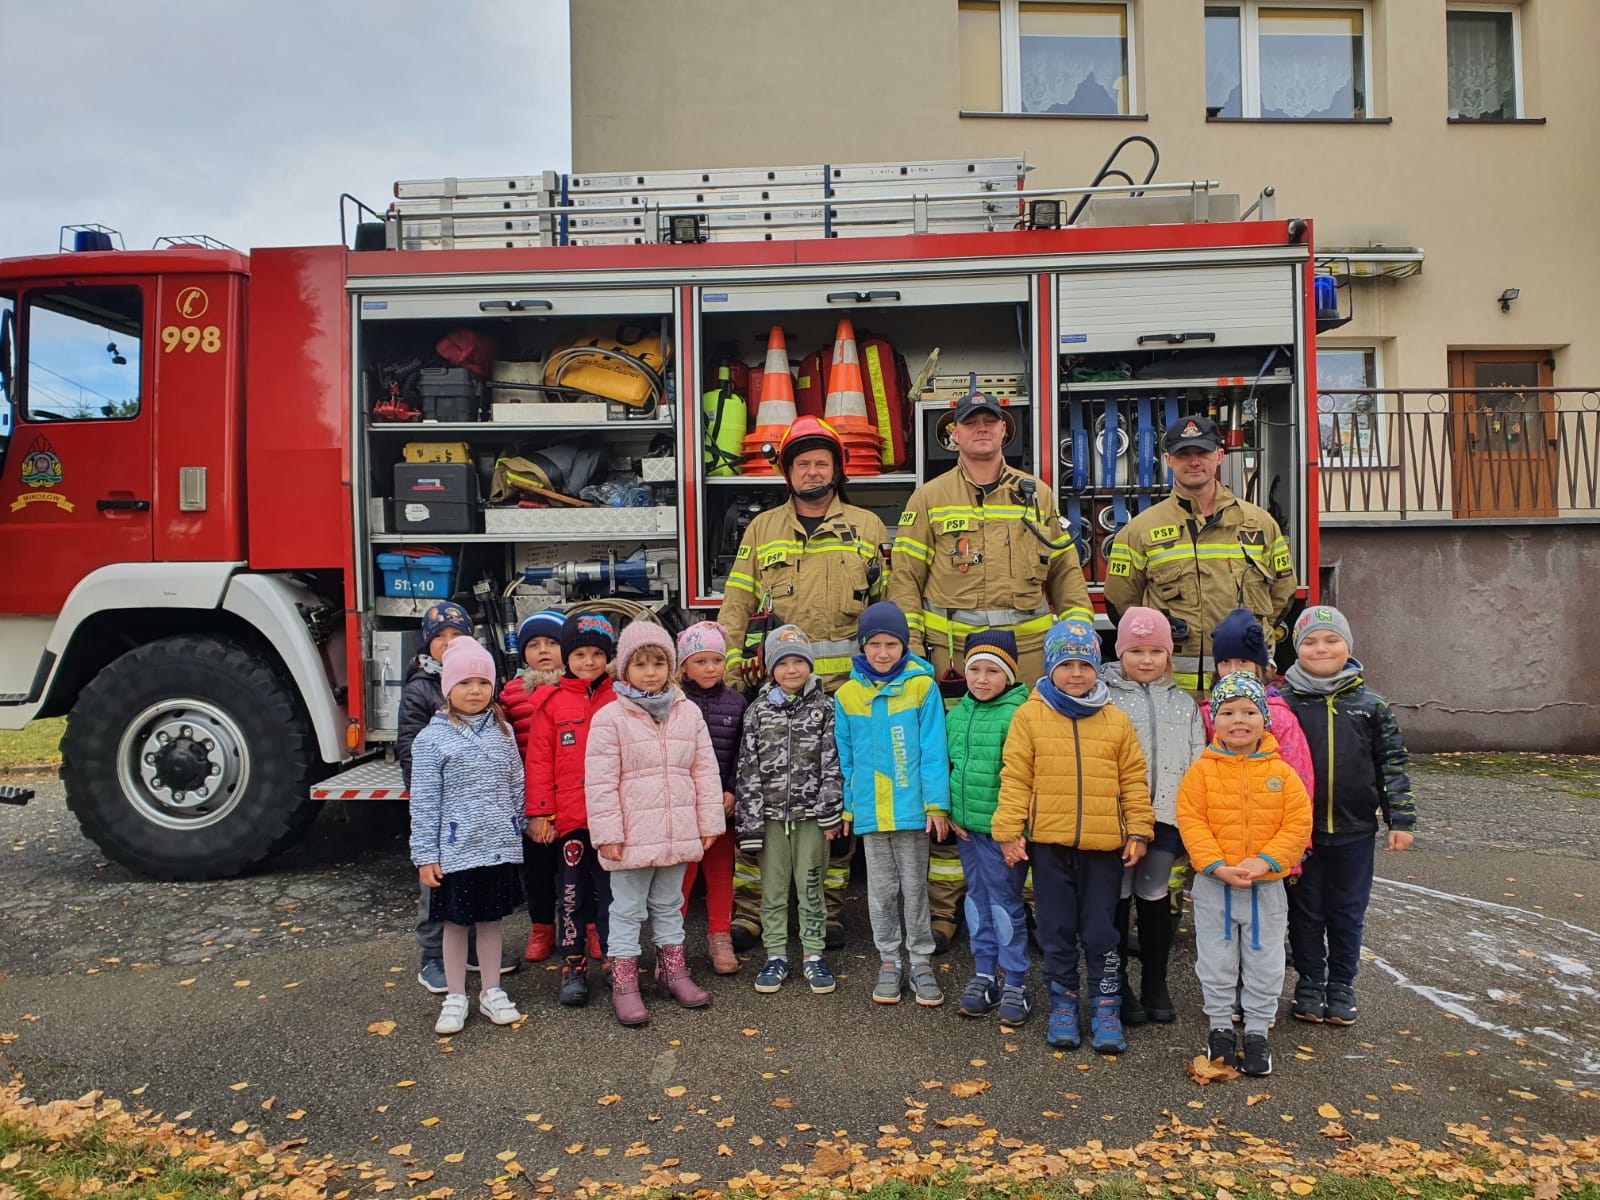 grupa dzieci wraz ze strażakami na tle wozu strażackiego